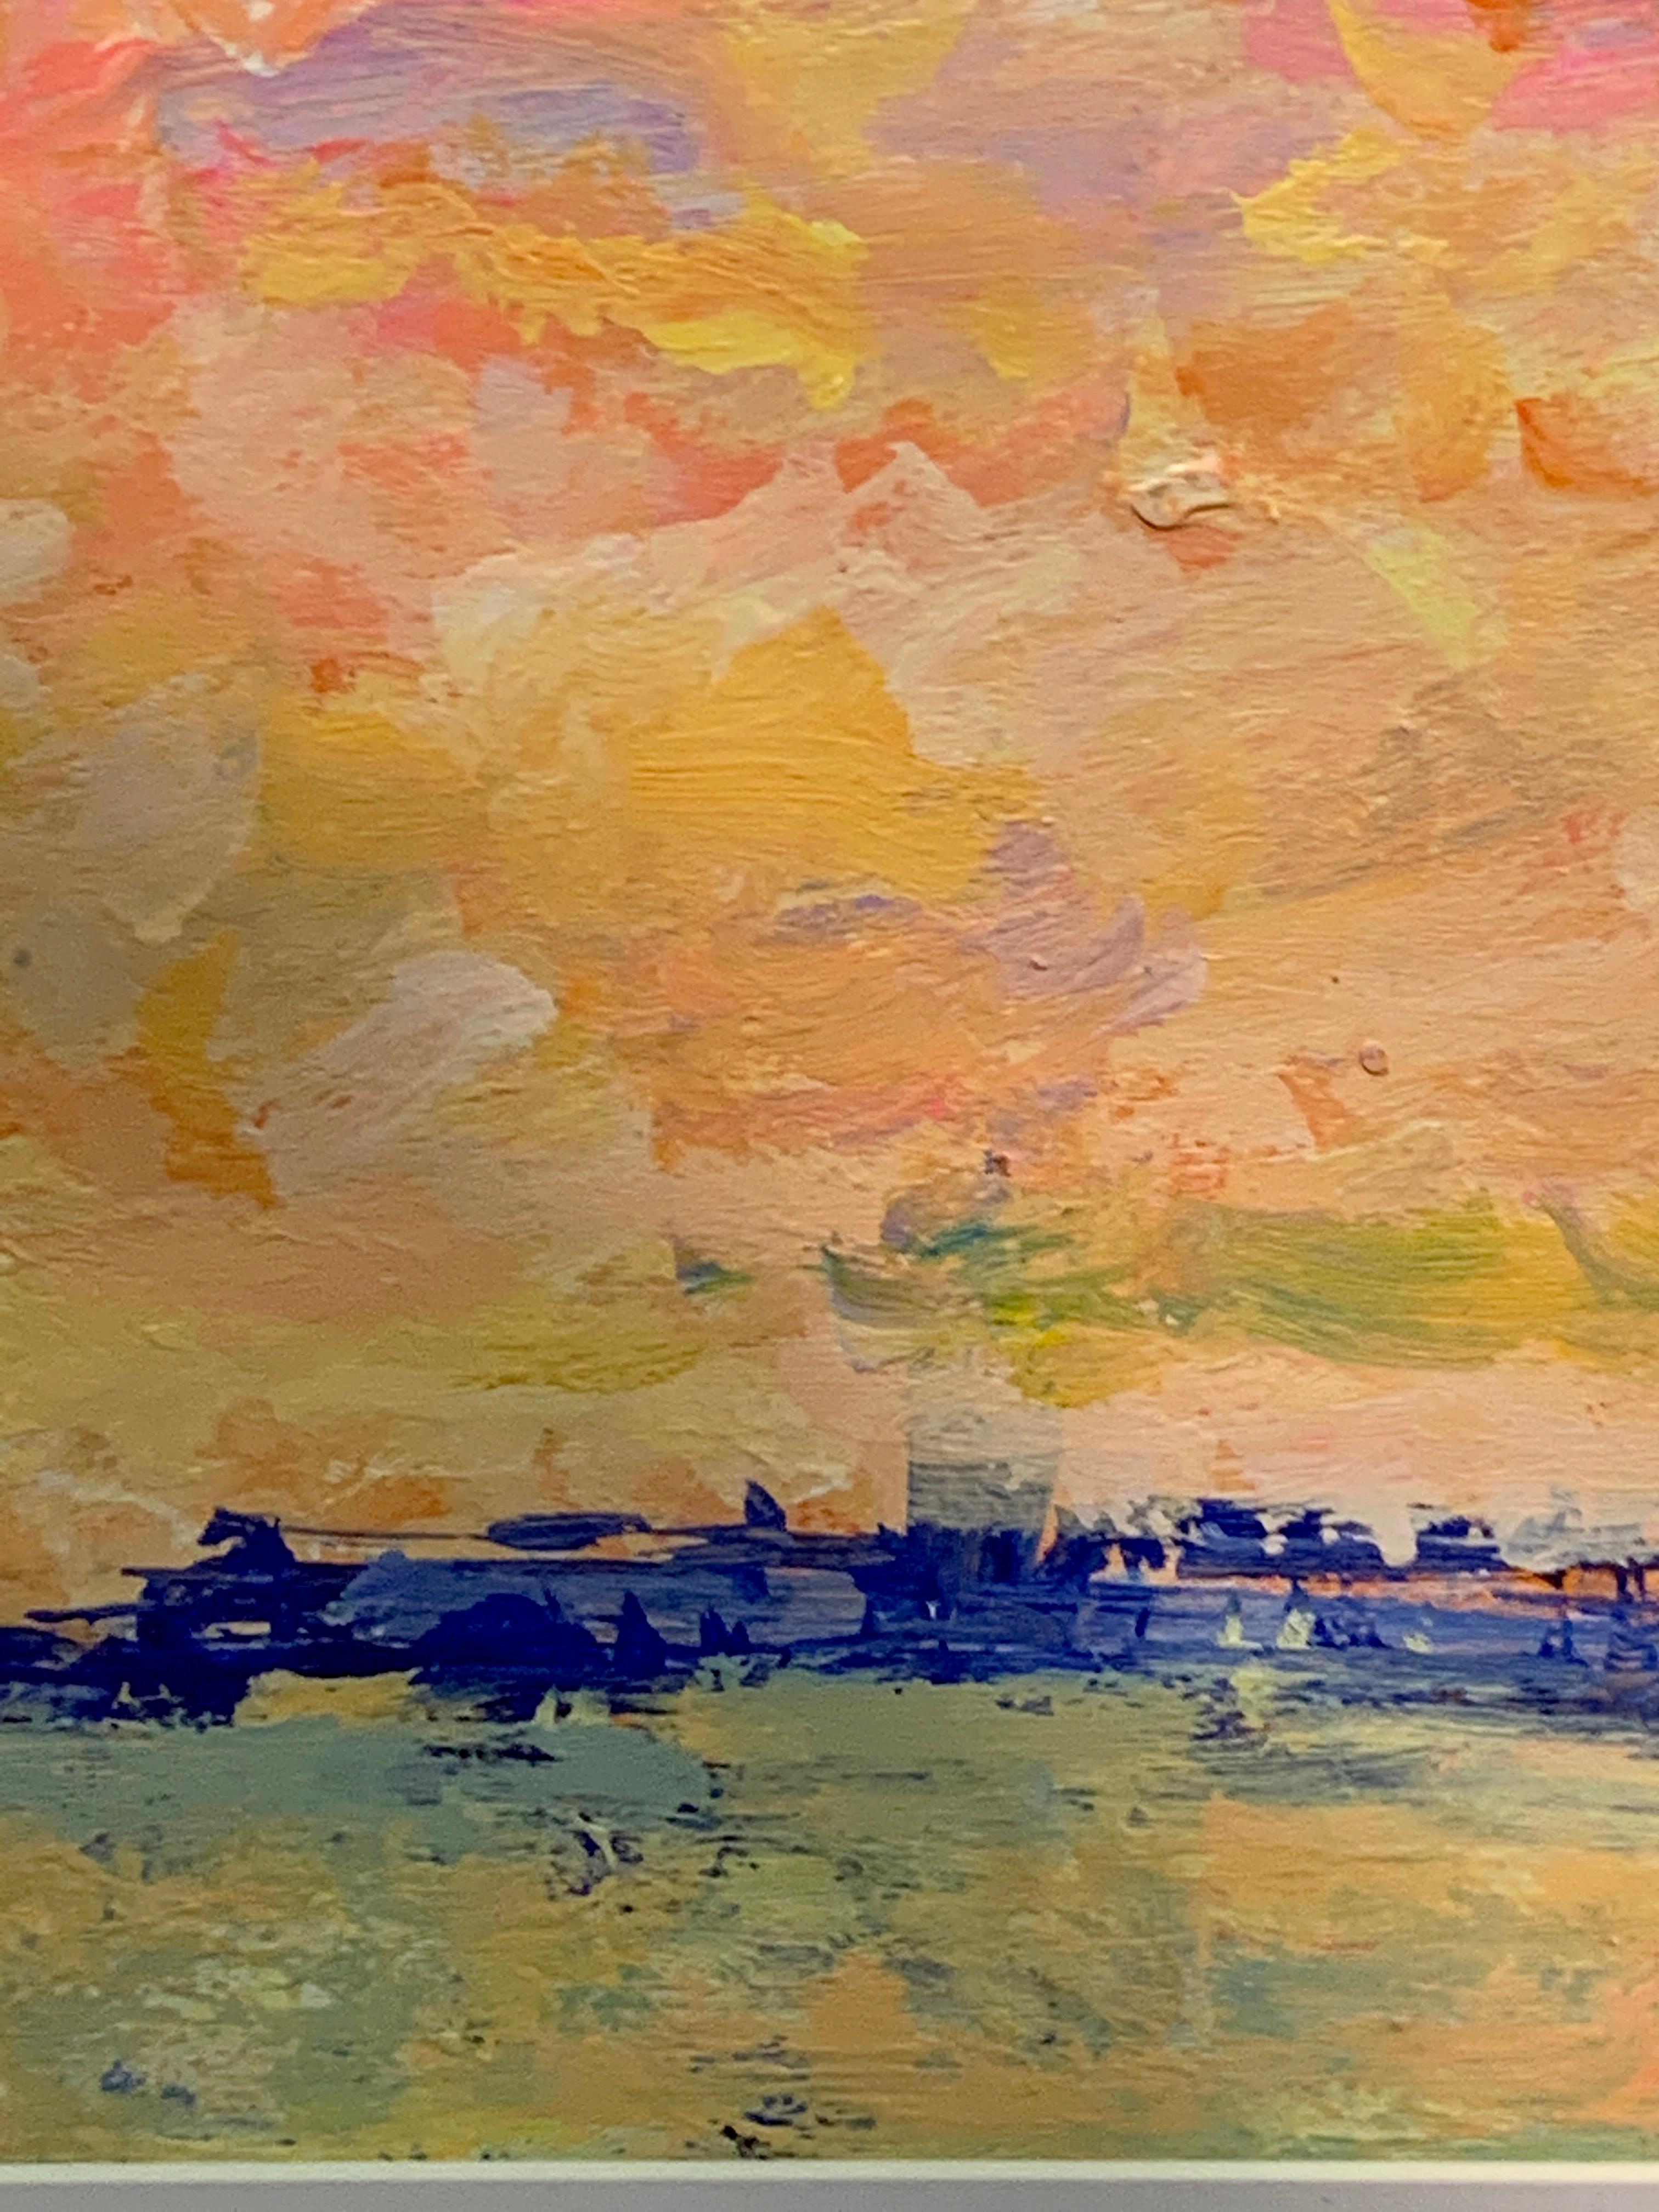 Une vue étonnante de Venise depuis une lagune, avec le soleil couchant.

Charles Bertie Hall est un peintre anglais et américain. Il peint dans un style impressionniste libre, très inspiré par le travail d'Edward Seago, d'Albert Goodwin et des